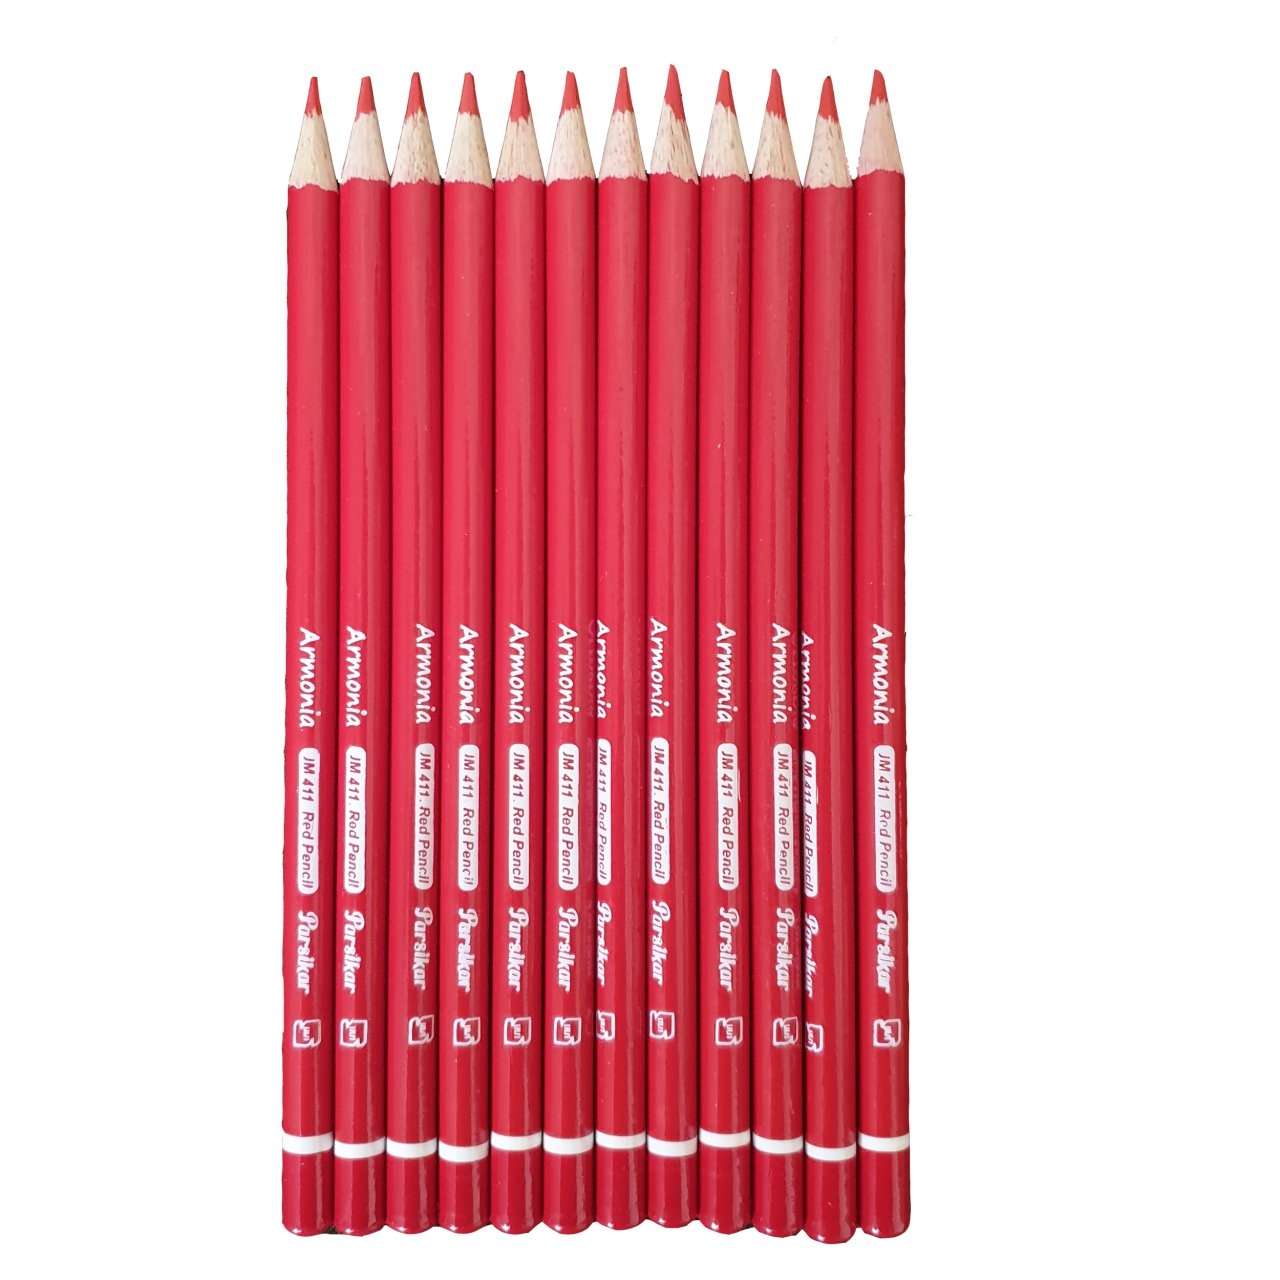 مداد قرمز پارسیکار مدل JM 411 بسته 12 عددی